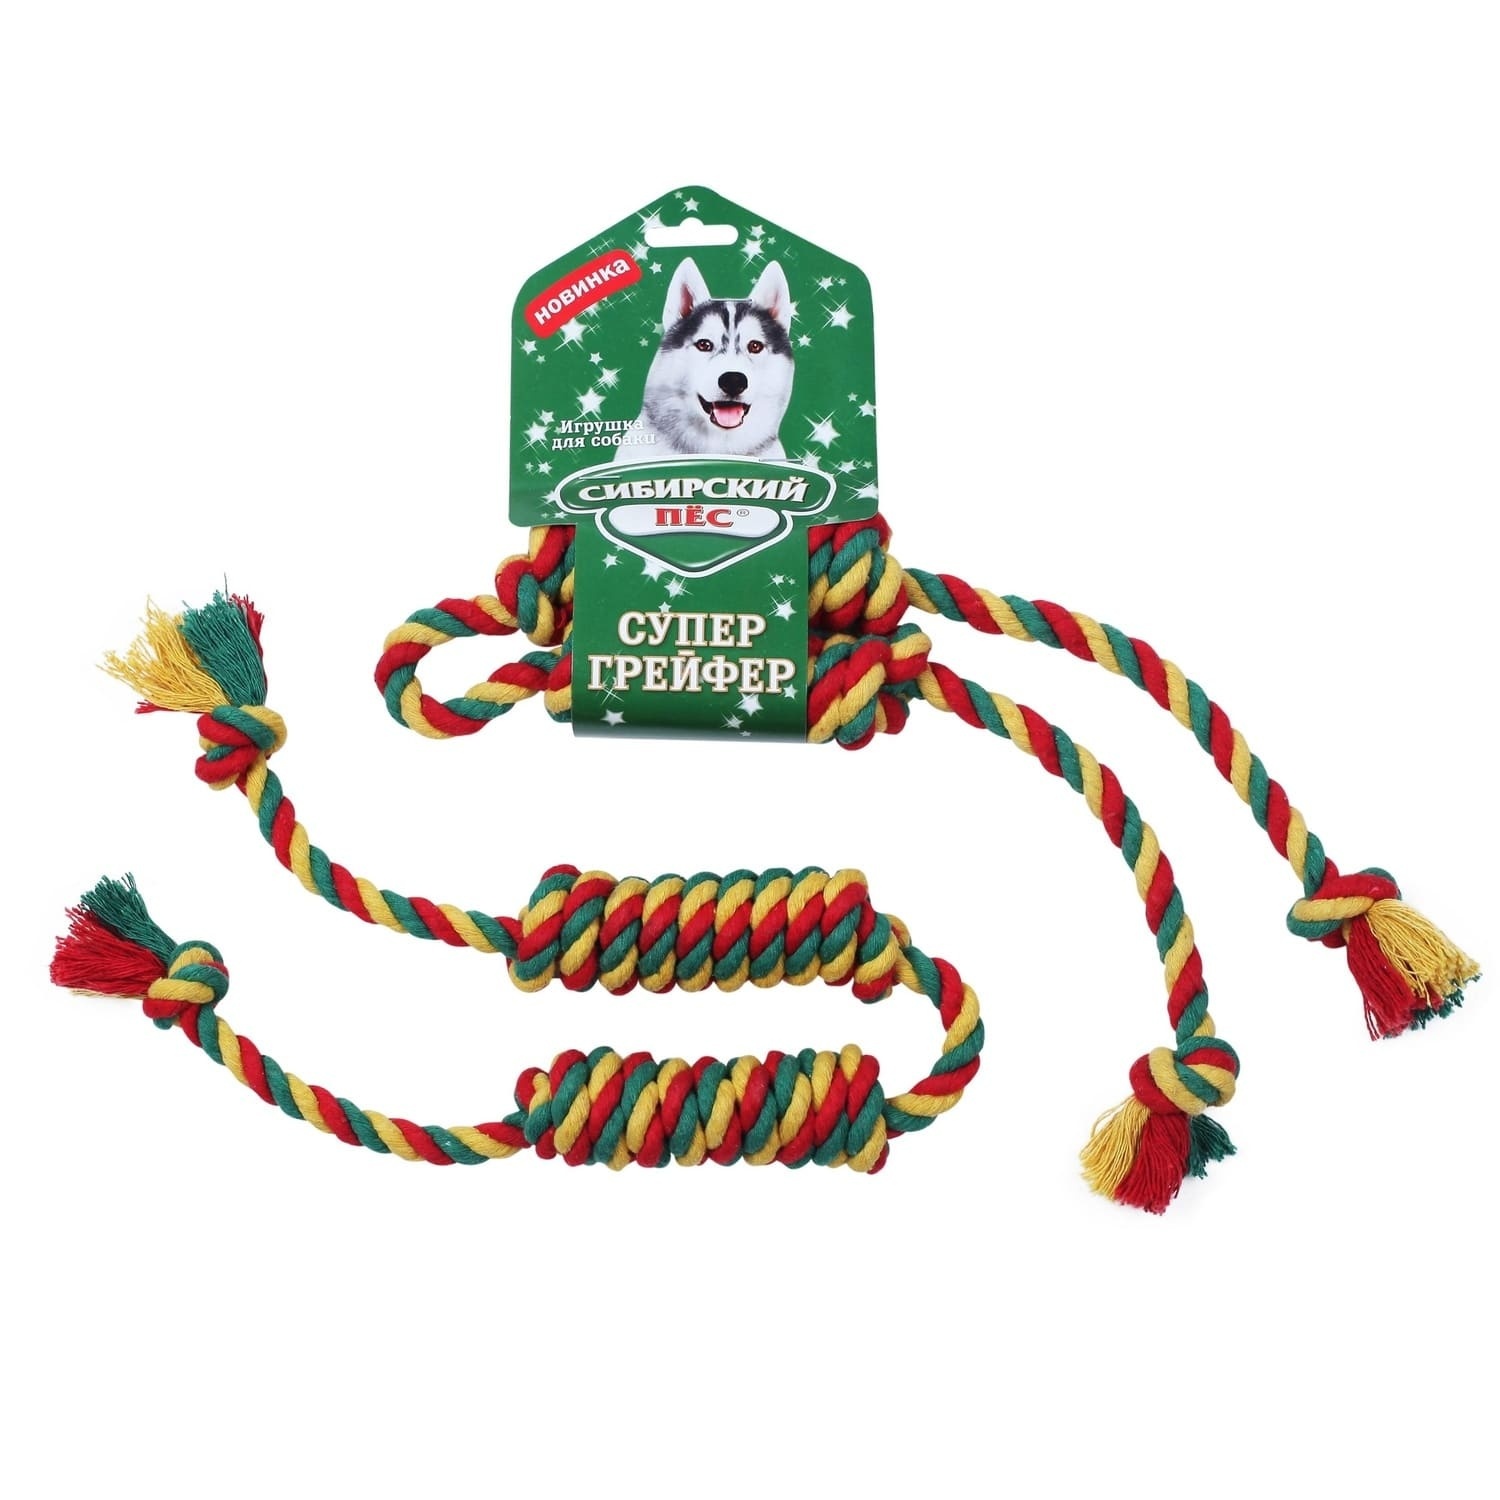 Сибирская кошка Сибирская кошка сибирский Пес игрушка для собаки Грейфер Бон-бон, цветная верёвка 2 узла (122 г)